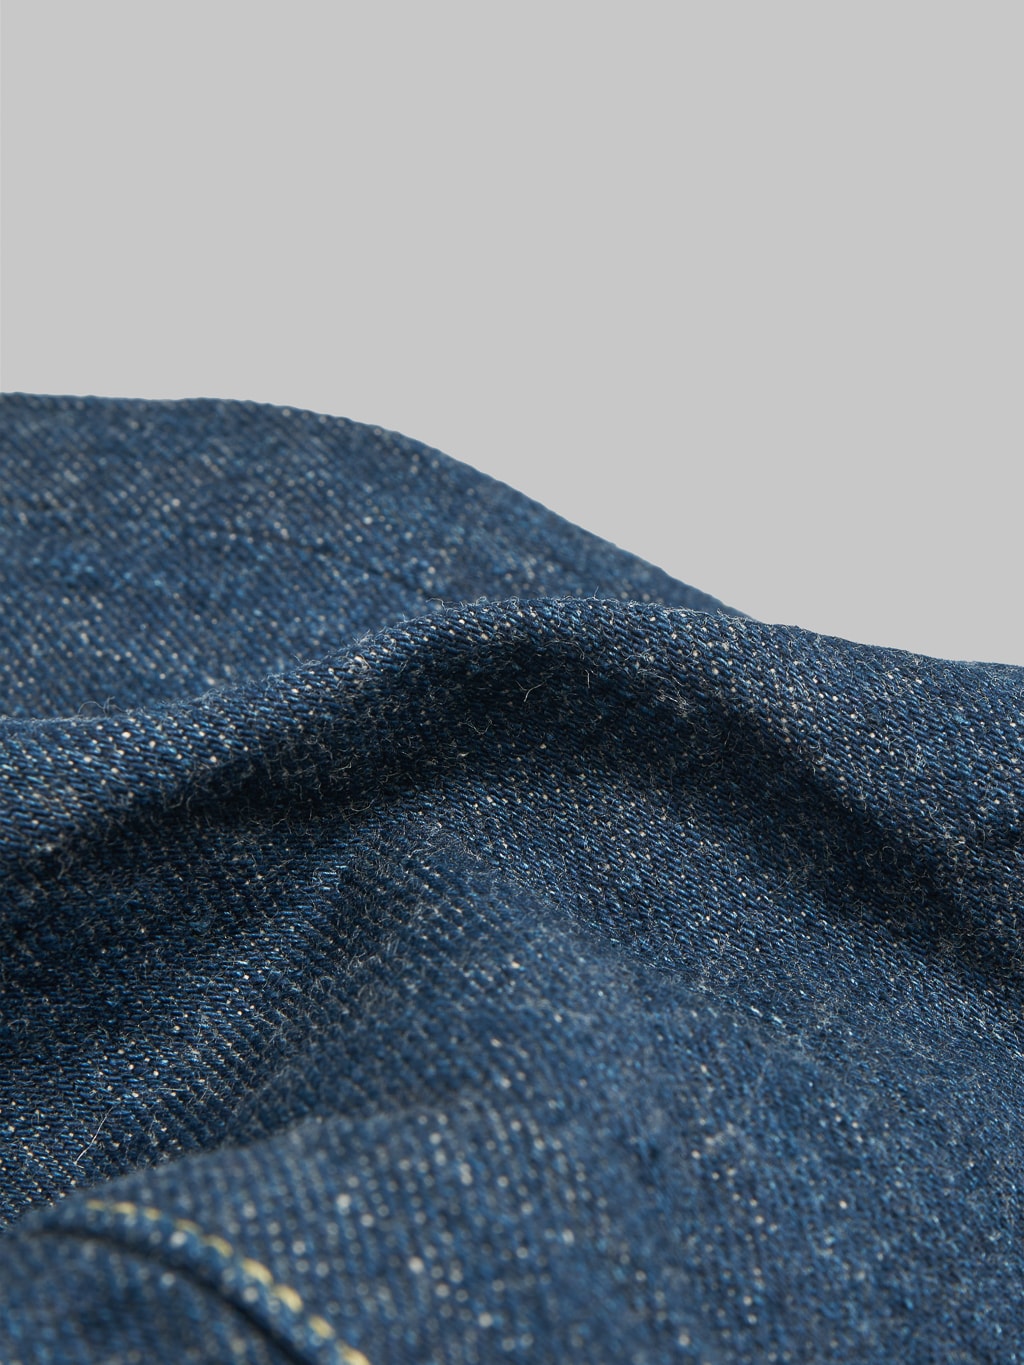 ONI Denim 902 Ishikawadai 15oz Jeans fabric texture